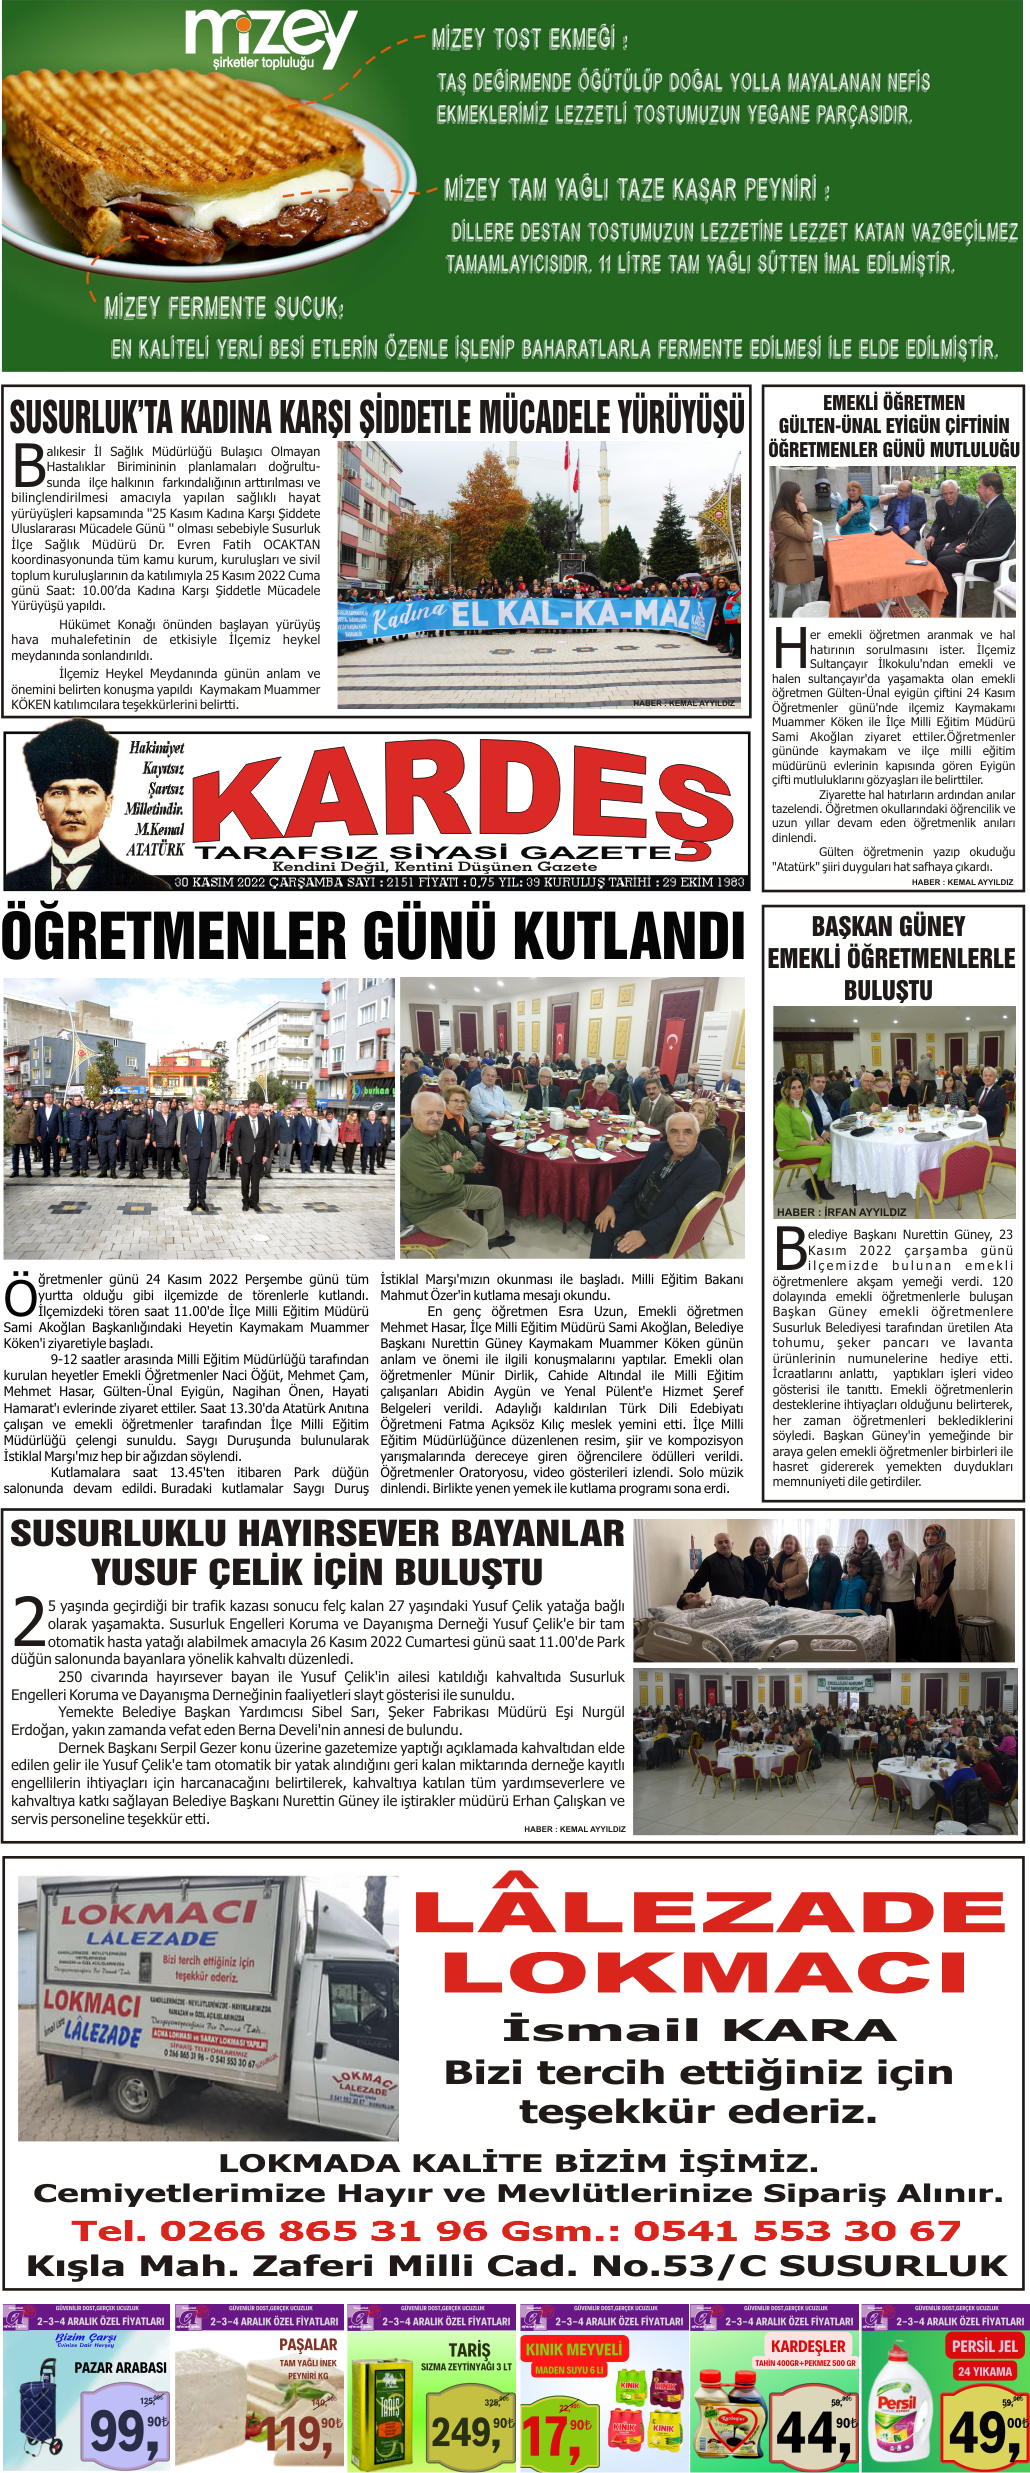 30.11.2022 Tarihli Kardeş Gazetesi